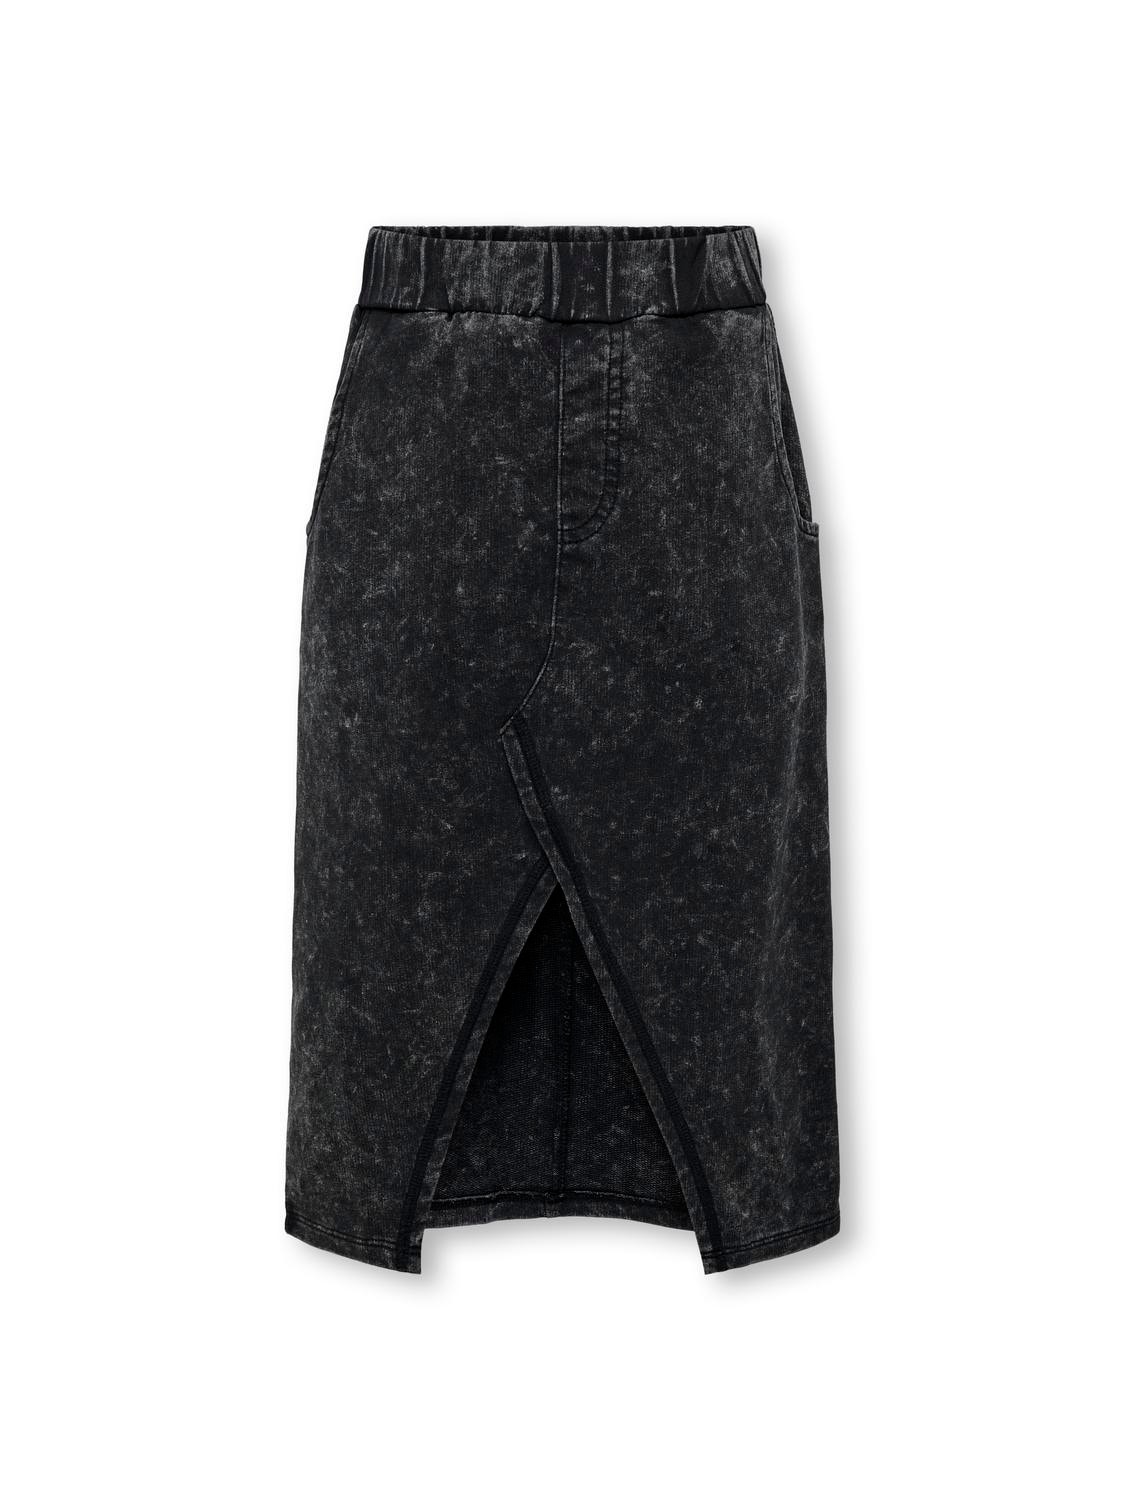 ONLY Midi skirt -Black - 15331361